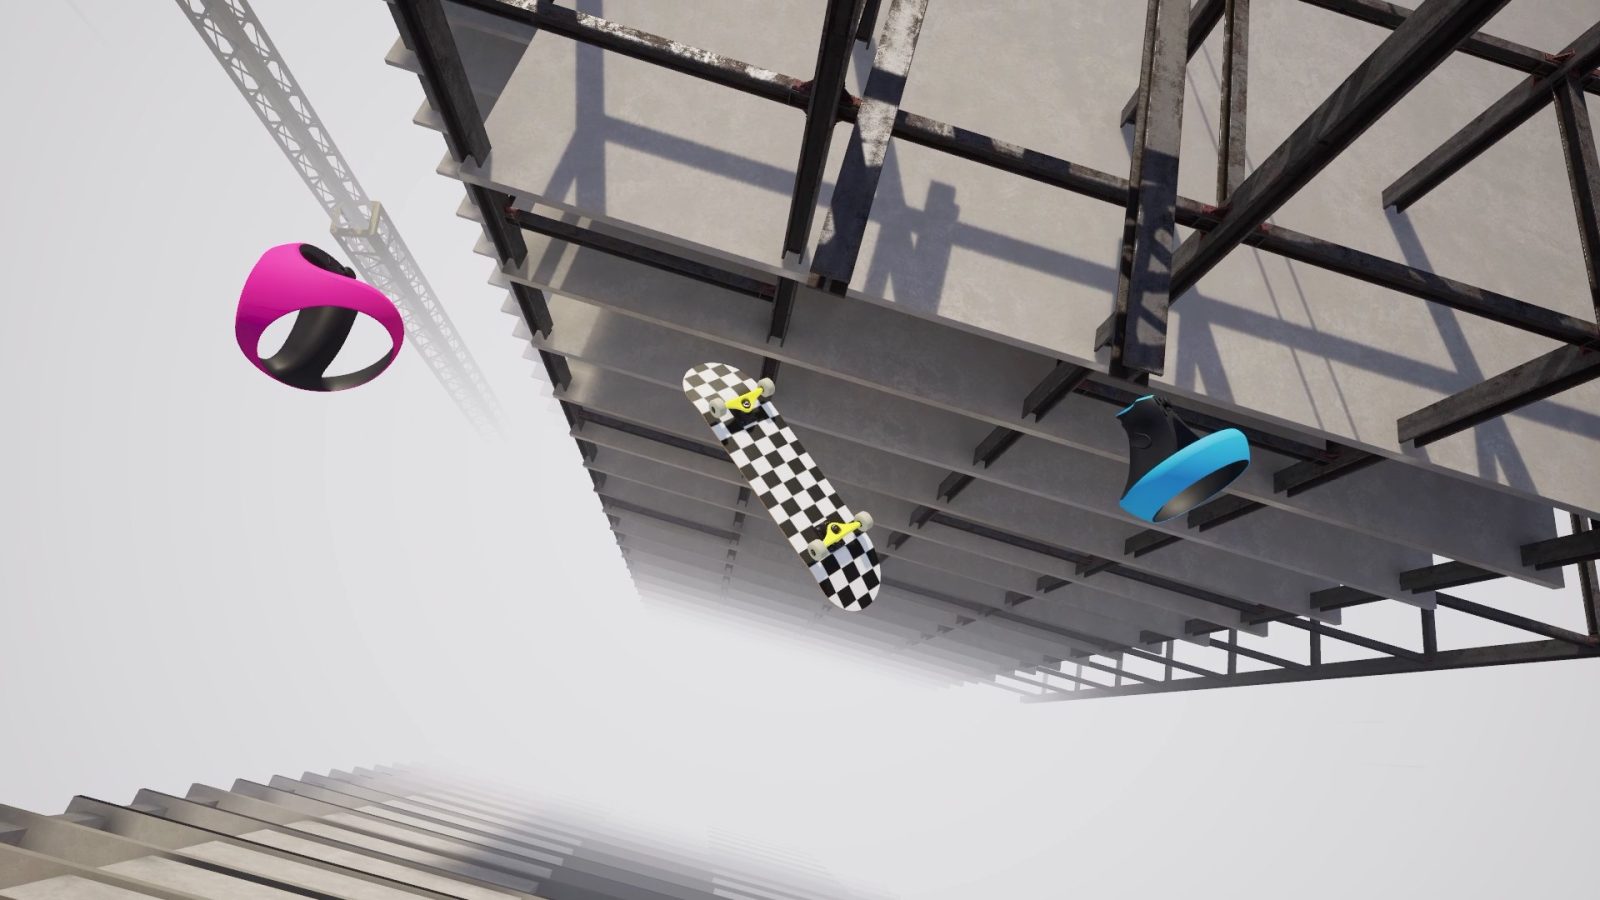 VR Skater - Official PSVR2 Trailer 